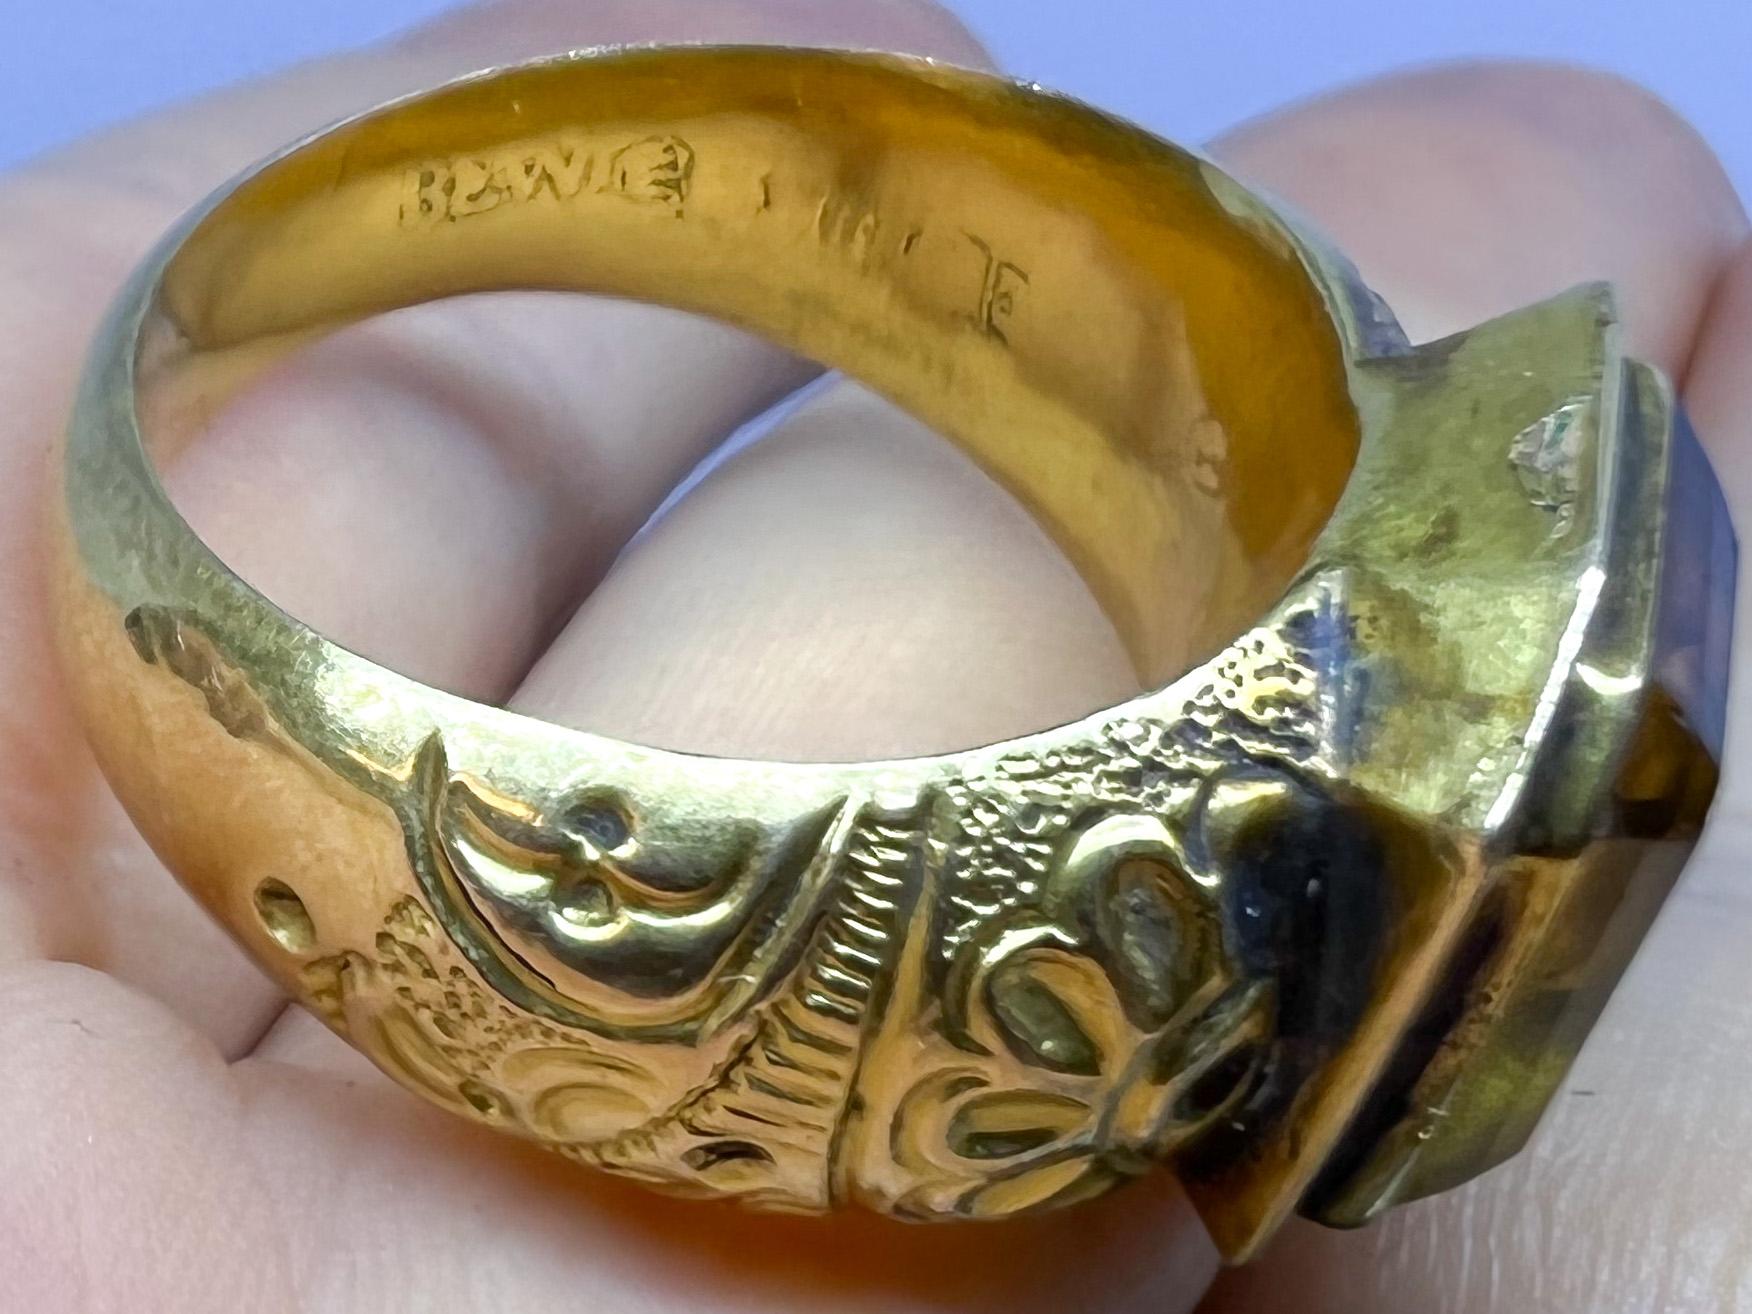 Antique Gold Ring 1855-1877 Tampere Finland In Good Condition For Sale In Orimattila, FI